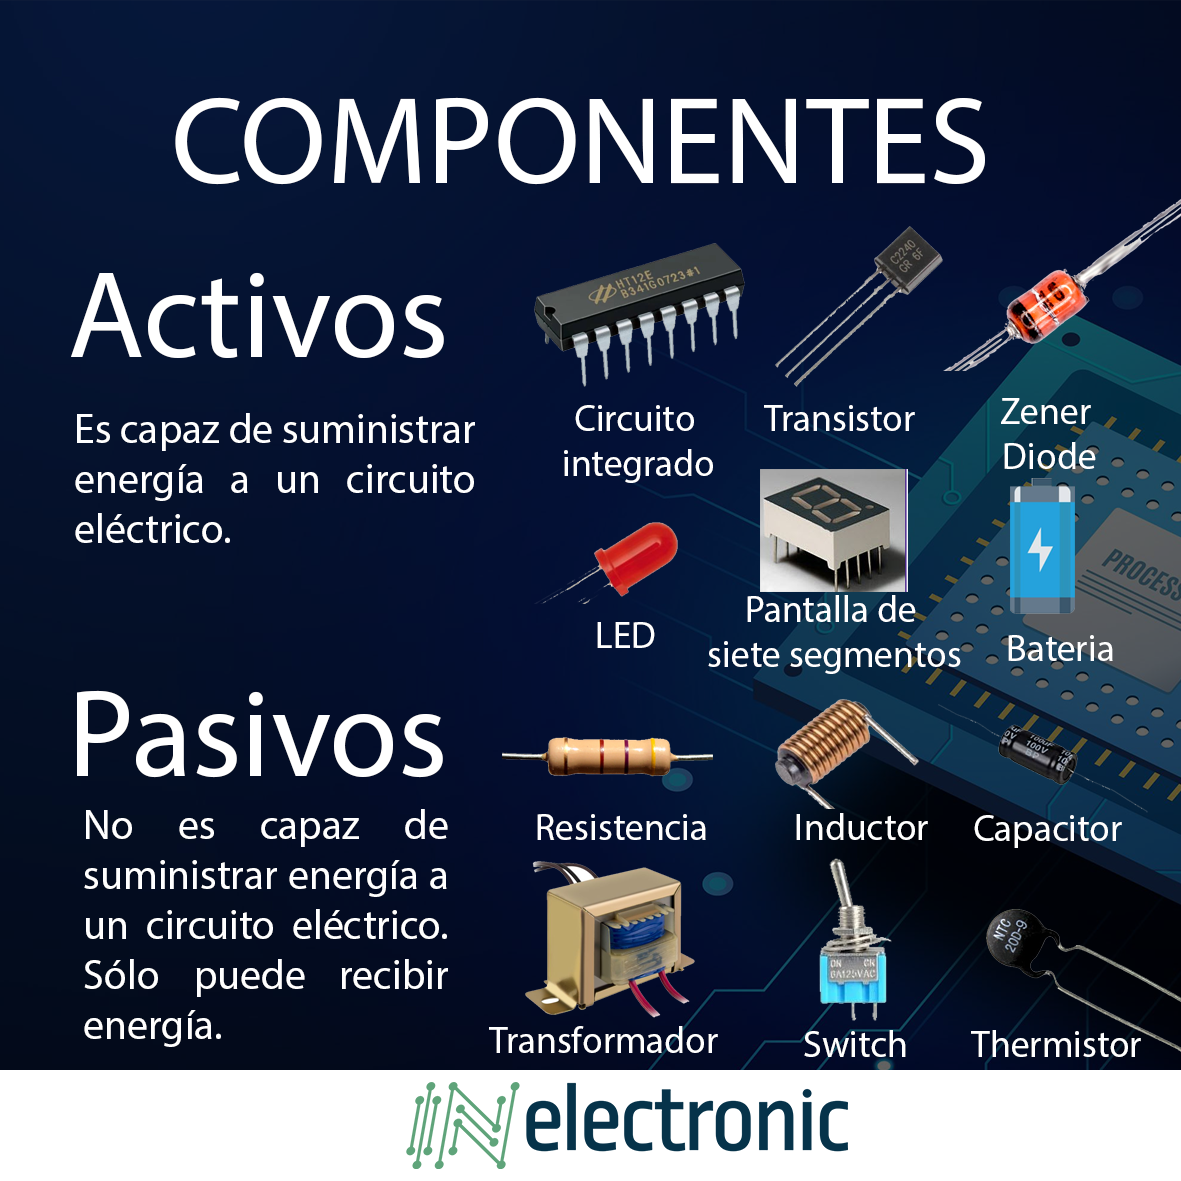 Componentes electrónicos: Pasivos y Activos – InElectronic